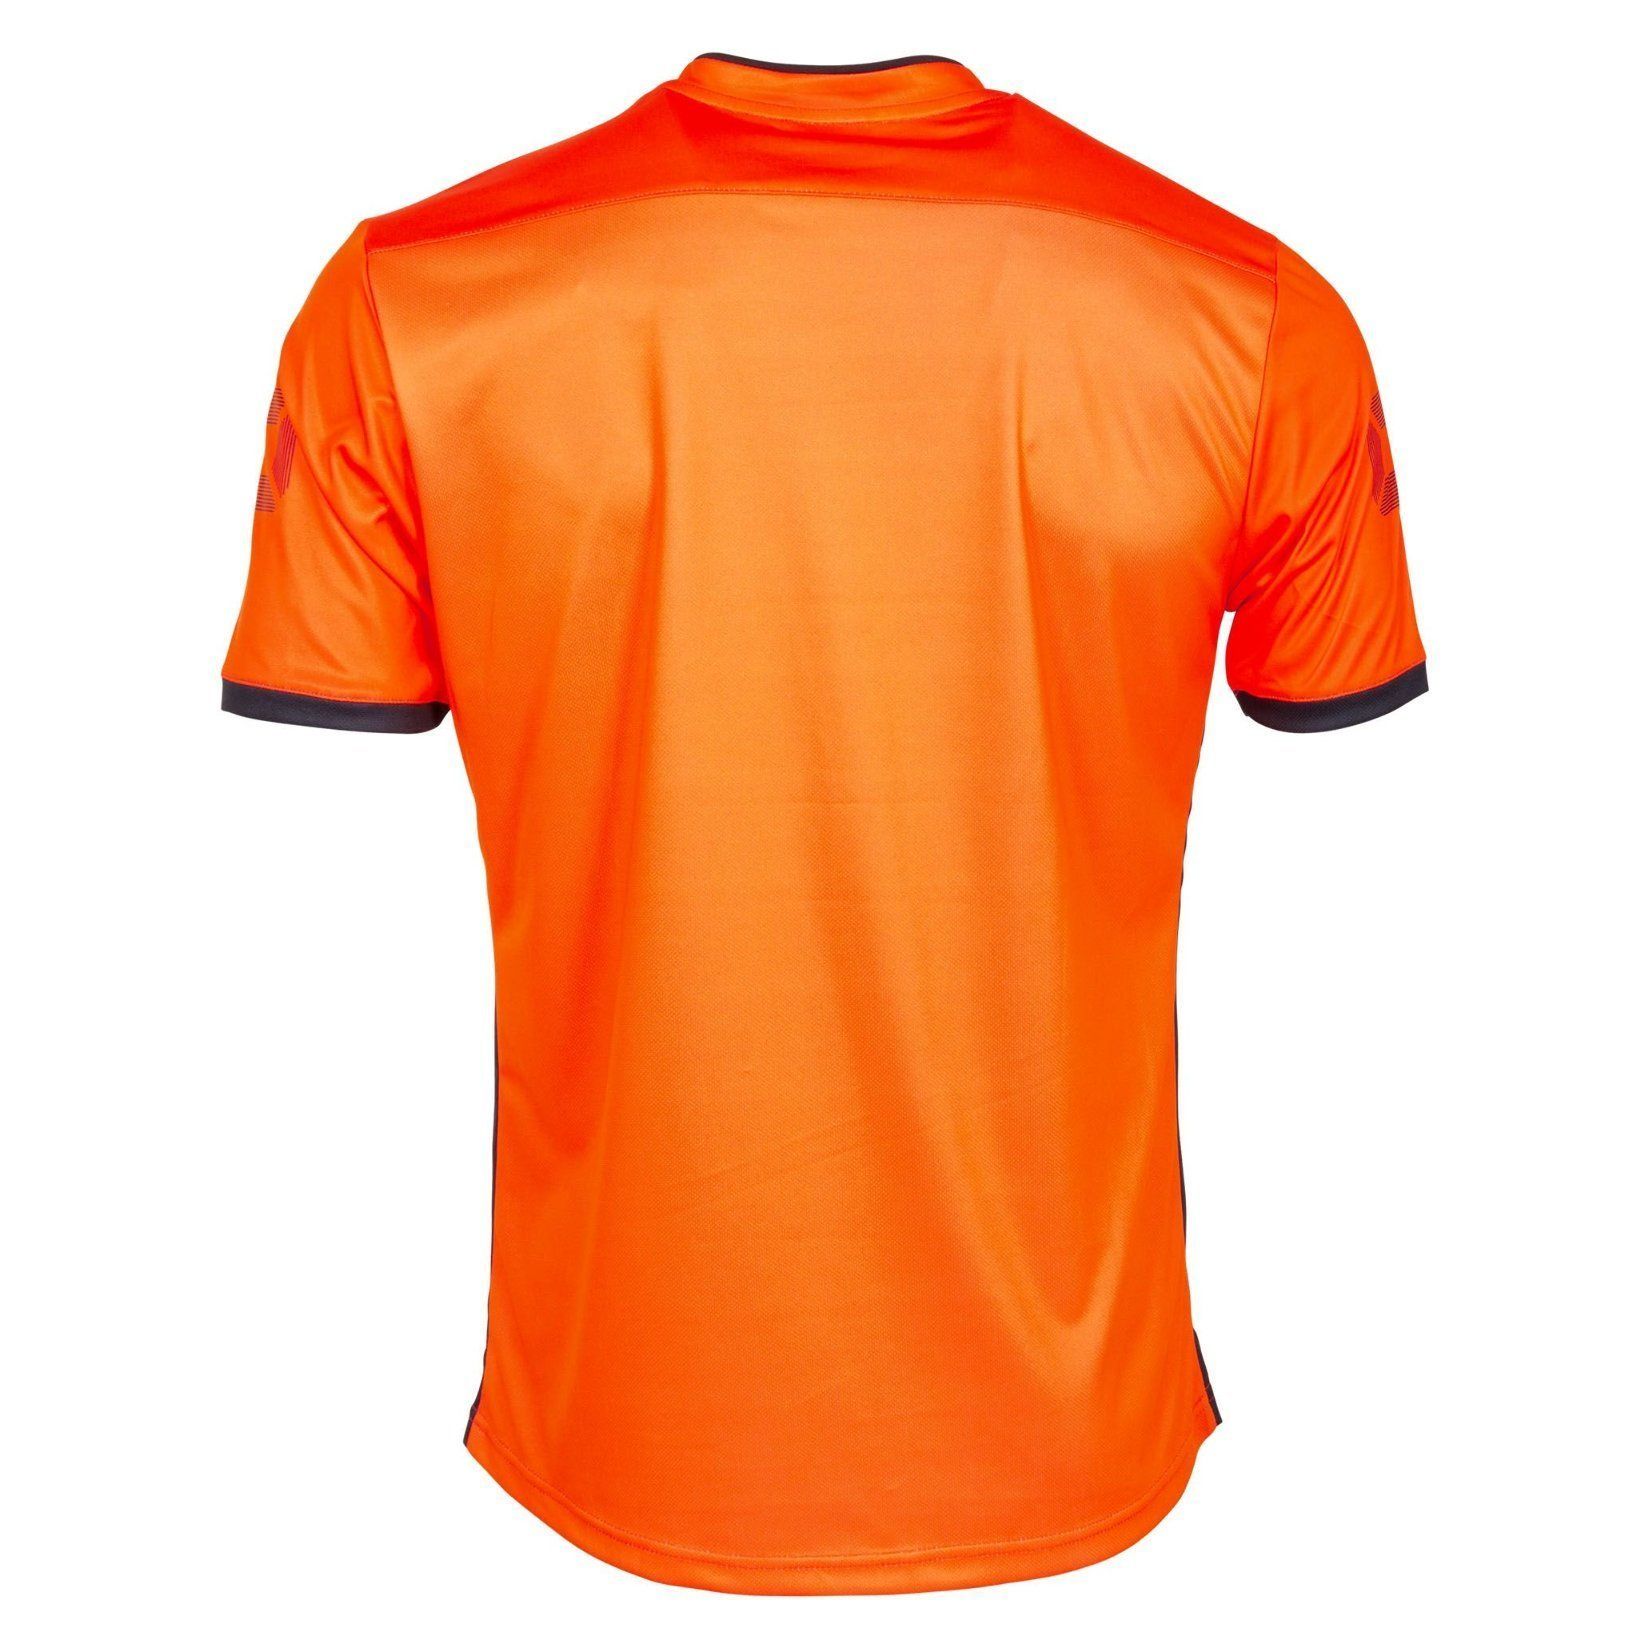 Stanno Fusion Short Sleeve Shirt - Kitlocker.com